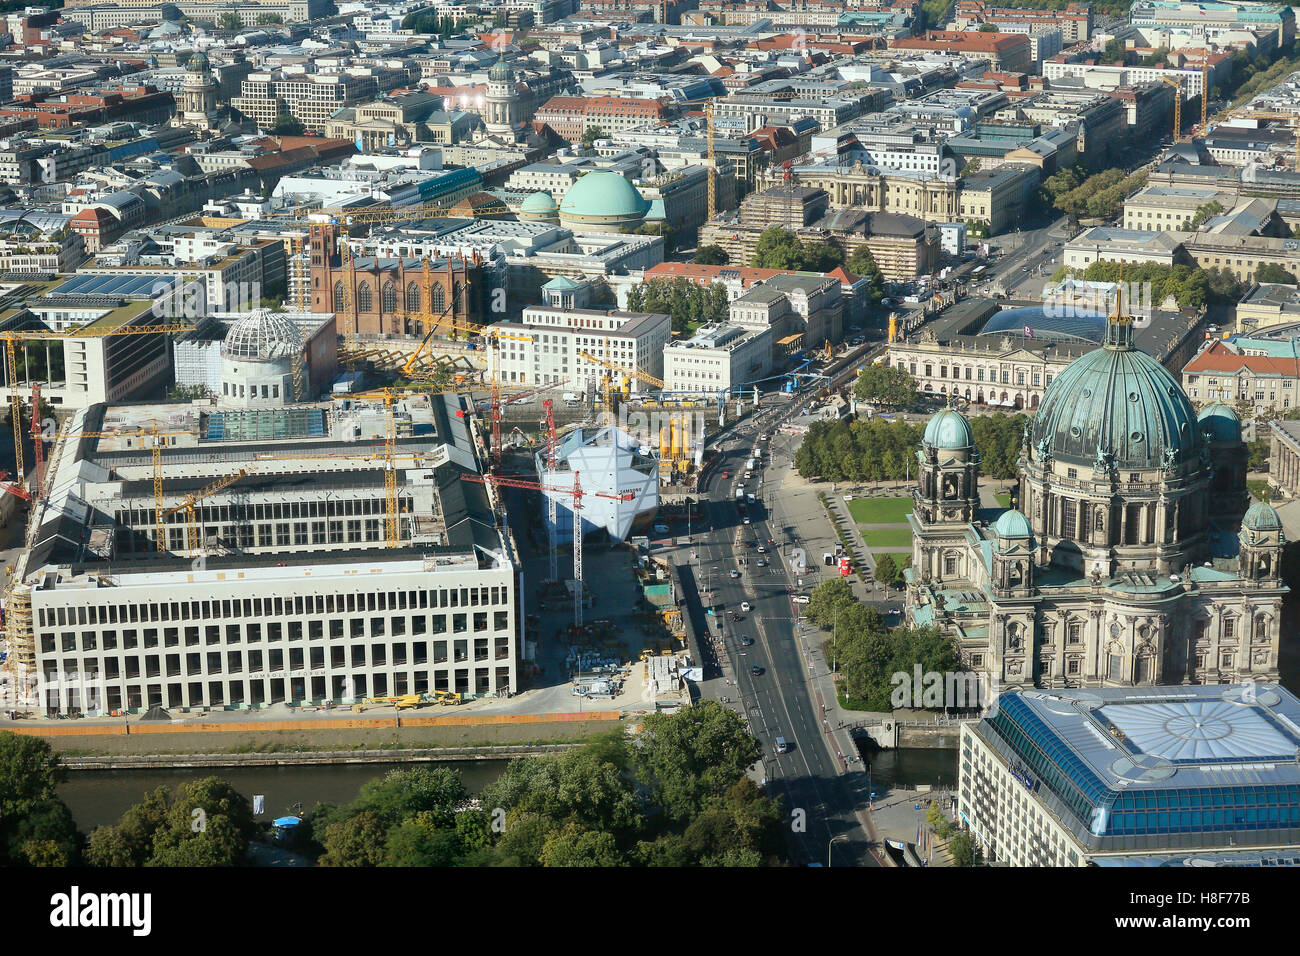 La reconstrucción del castillo de Berlín, Humboldt-Forum, Mitte, Berlin, Alemania Foto de stock